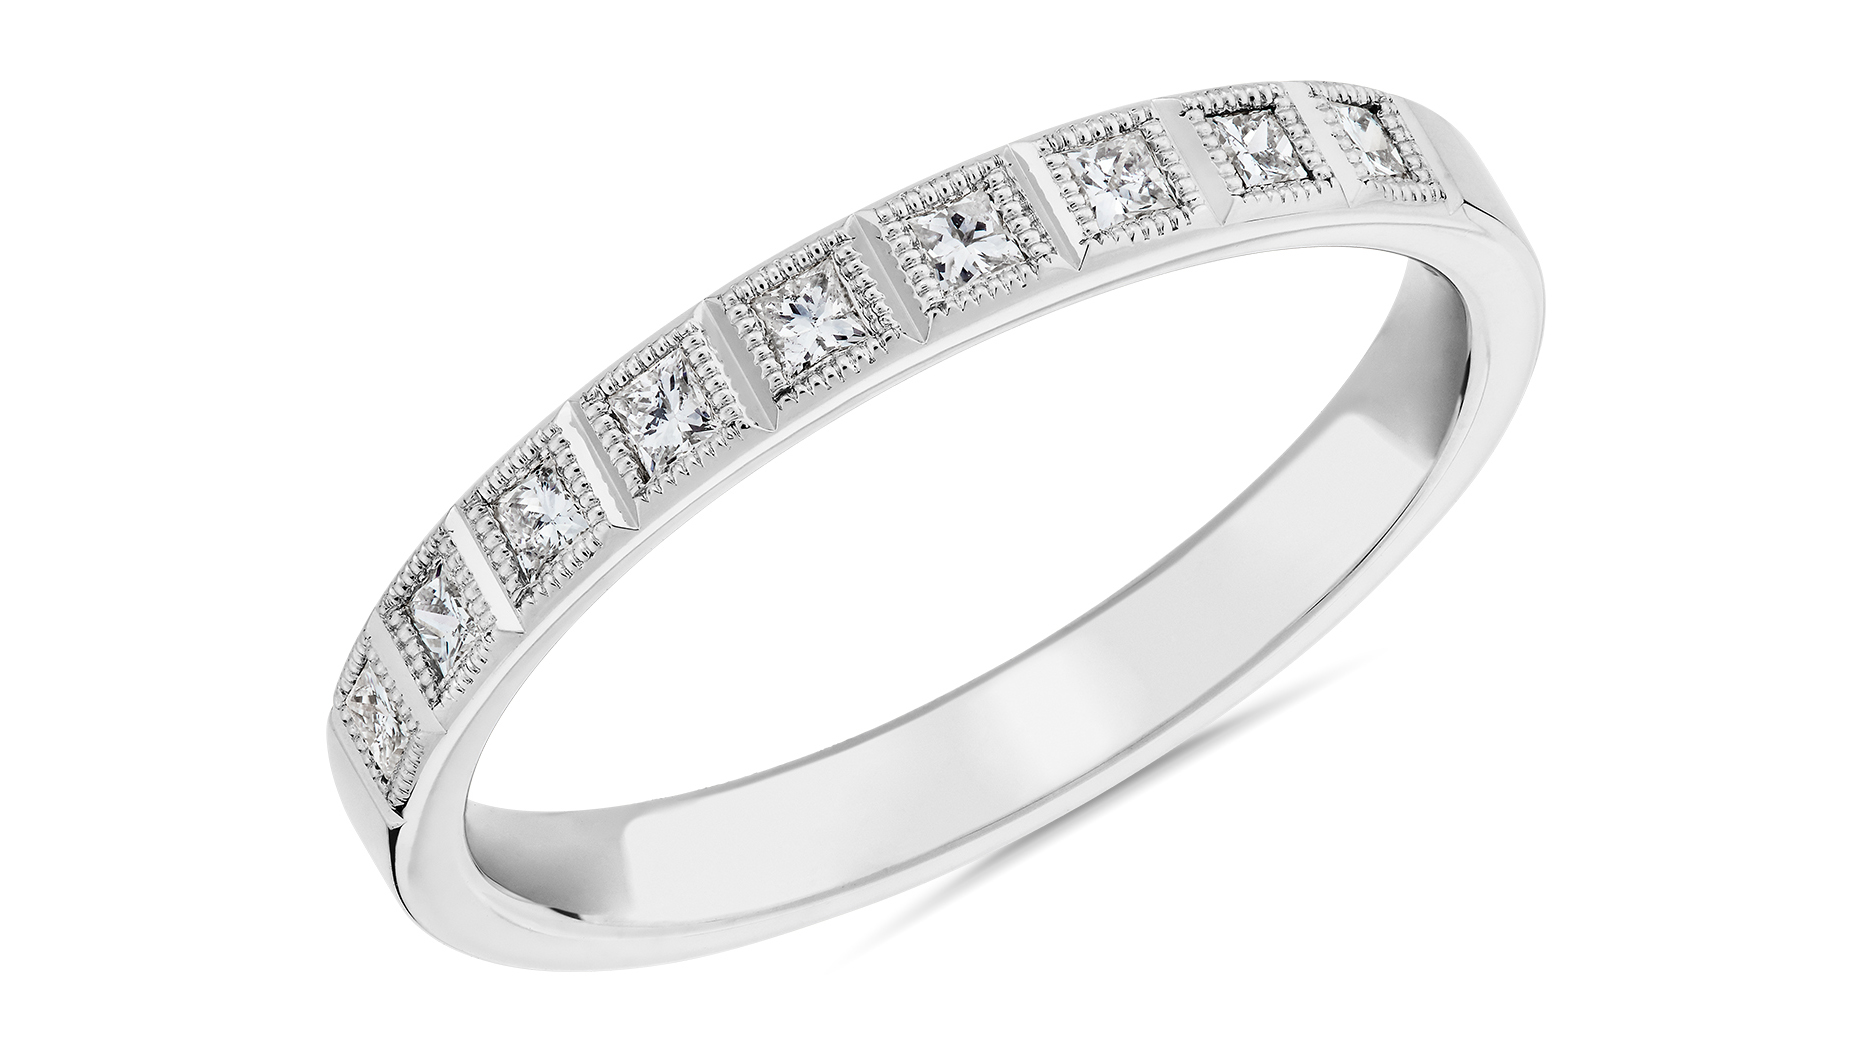 De Beers Jewelers Launches Line of Genderless Diamond Jewelry